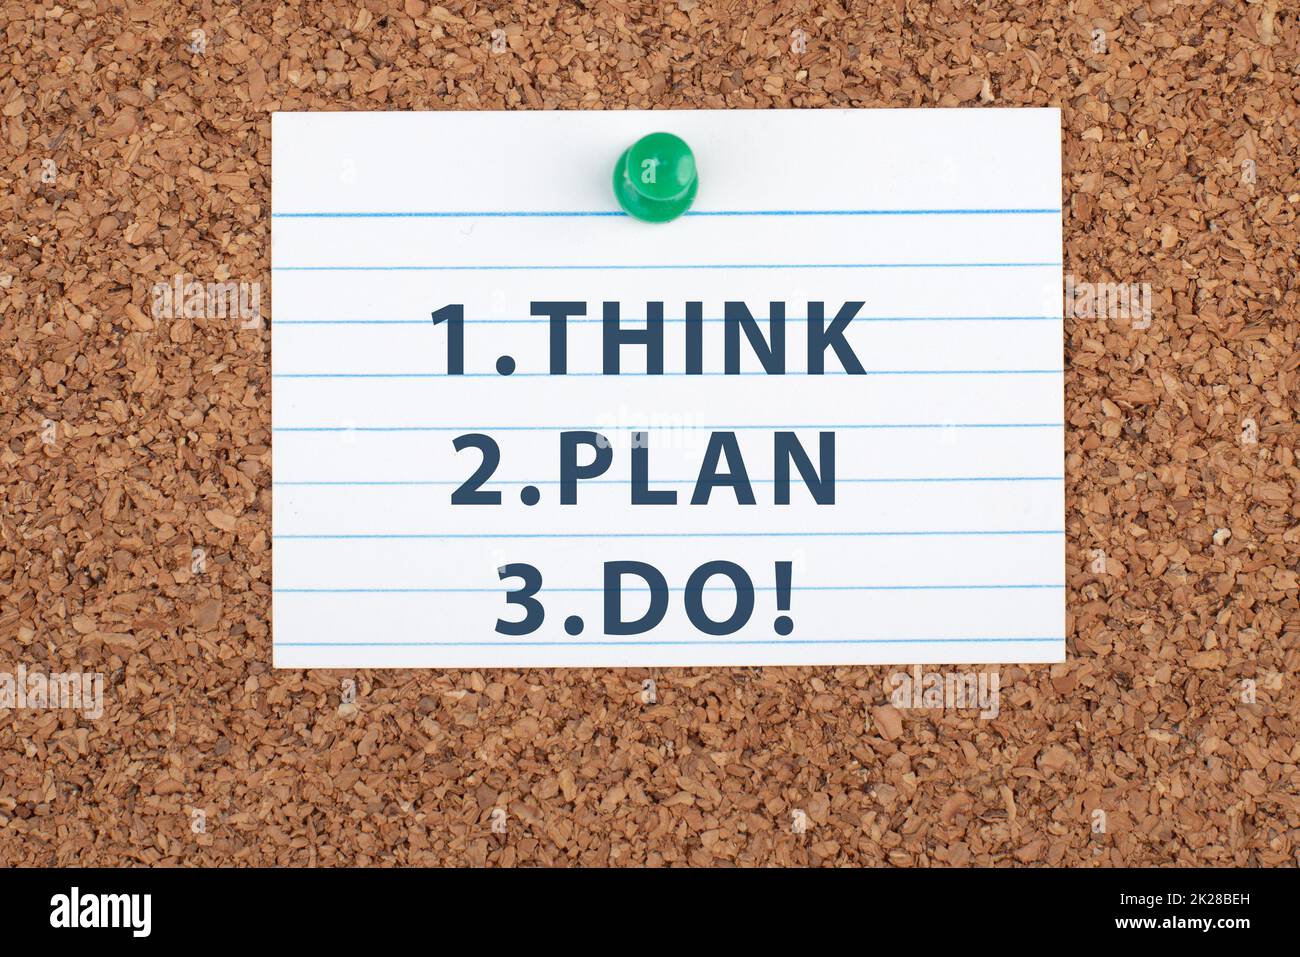 Die Wörter think Plan do stehen auf einem Blatt Papier, haben ein Geschäfts- und Bildungsziel, Coaching-Konzept, positives Denken, Motivation Stockfoto